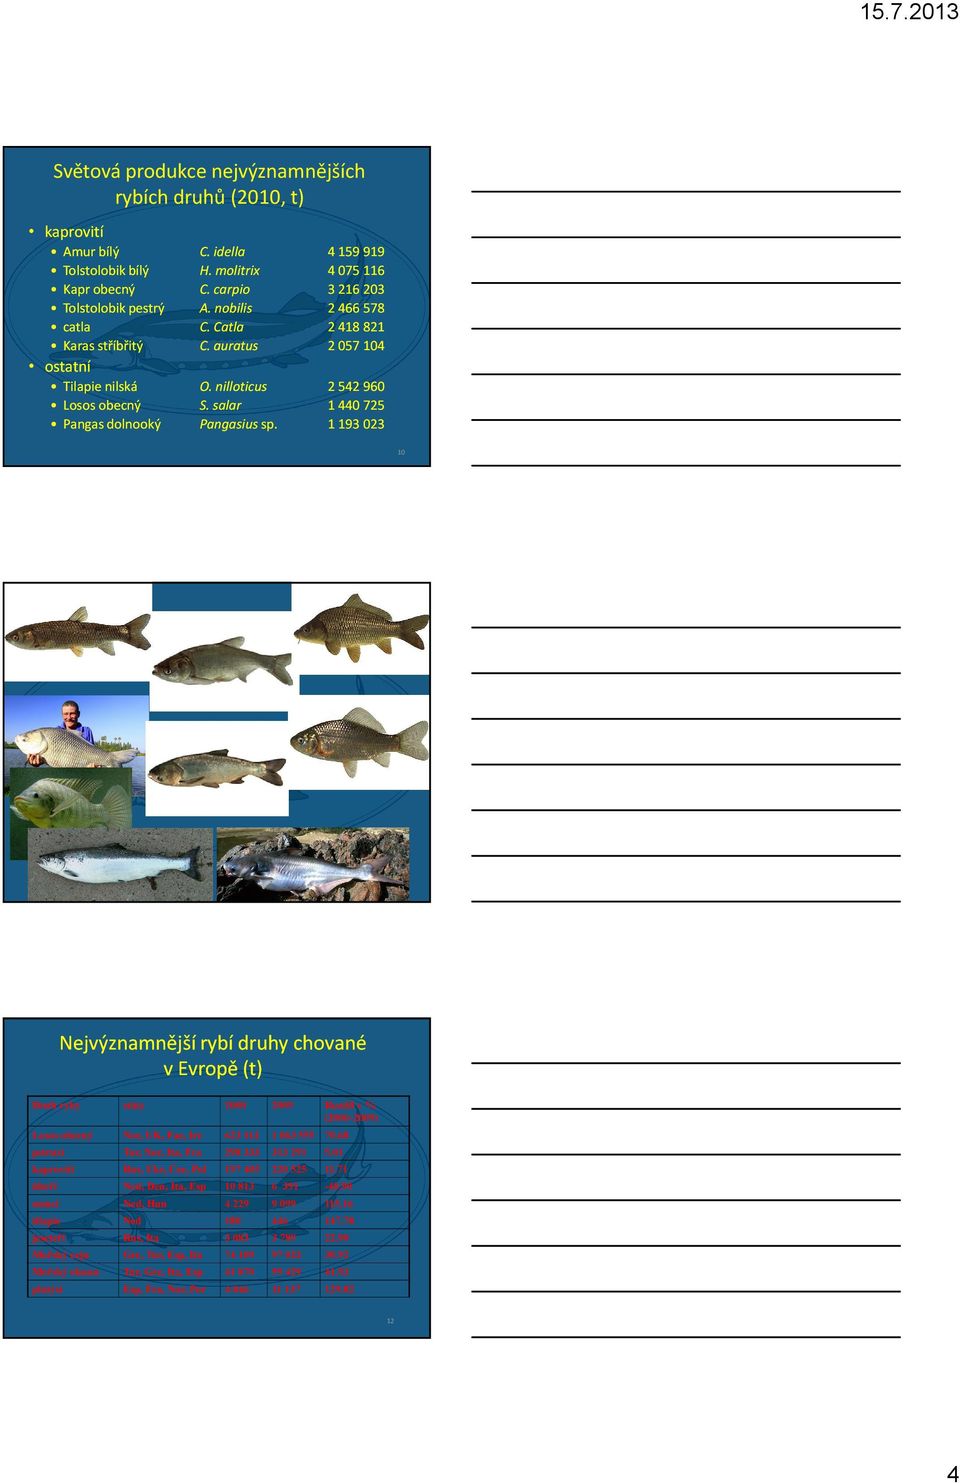 2 542 960 1 440 725 1 193 023 ostatní Tilapie nilská Losos obecný Pangas dolnooký 10 11 Nejvýznamnější rybí druhy chované v Evropě (t) Druh ryby státy 2000 2009 Rozdíl v % (2000-2009) Losos obecný